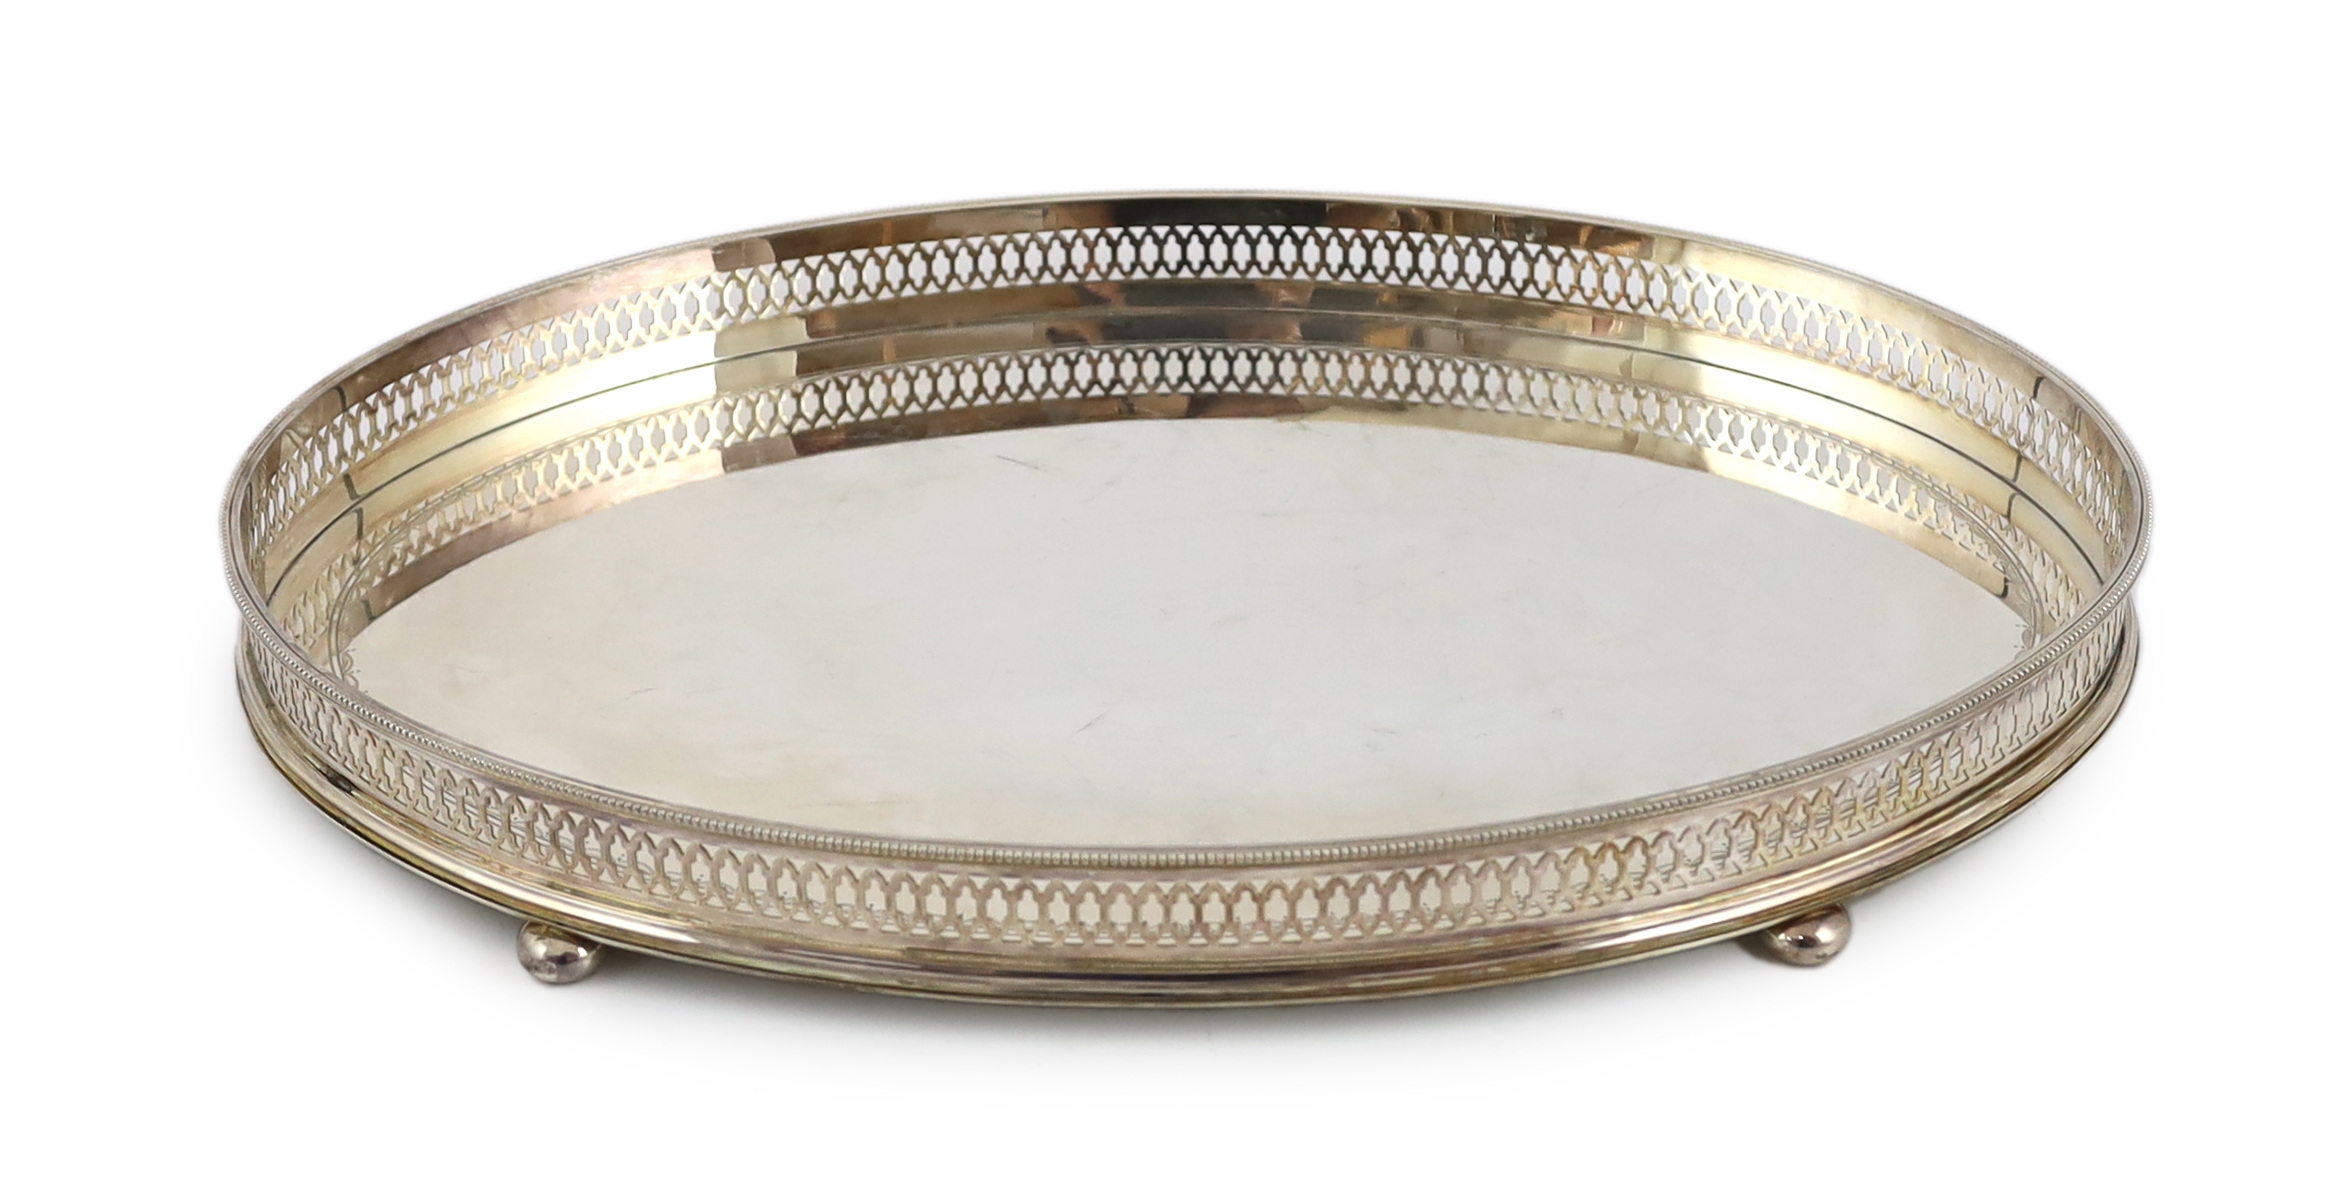 An Elizabeth II silver oval tea tray, by C.J. Vander Ltd